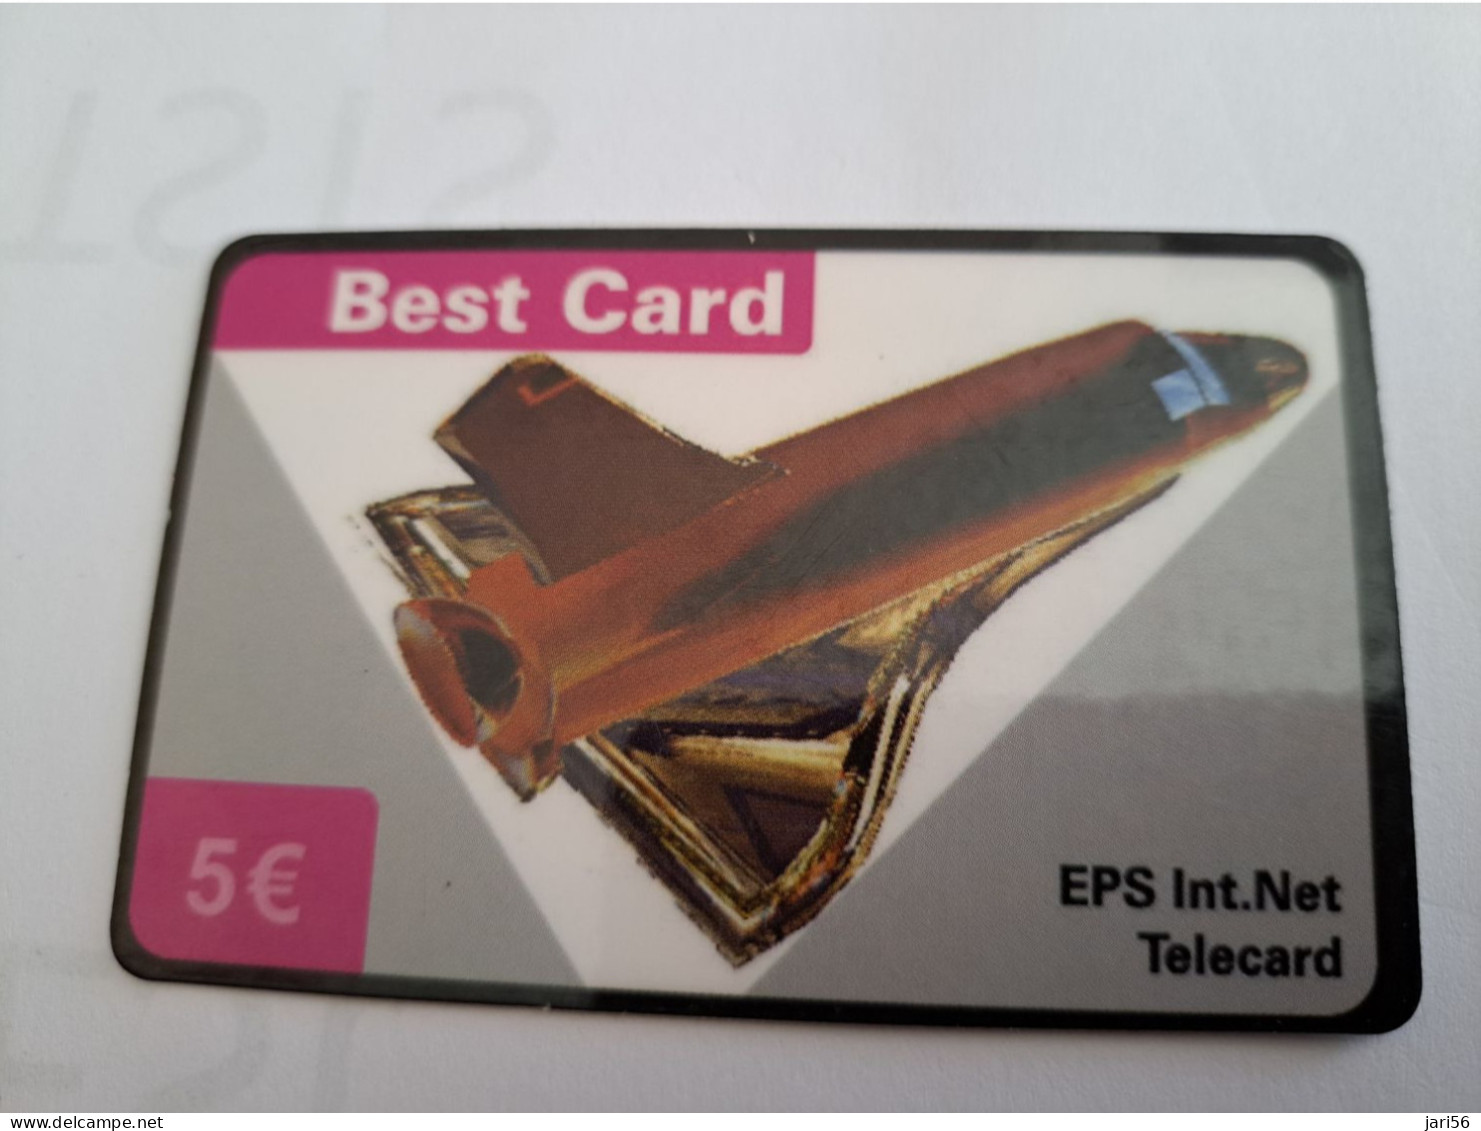 DUITSLAND/GERMANY  € 5,- / BEST CARD/ SPACE SHUTTLE   ON CARD        Fine Used  PREPAID  **16533** - GSM, Voorafbetaald & Herlaadbare Kaarten